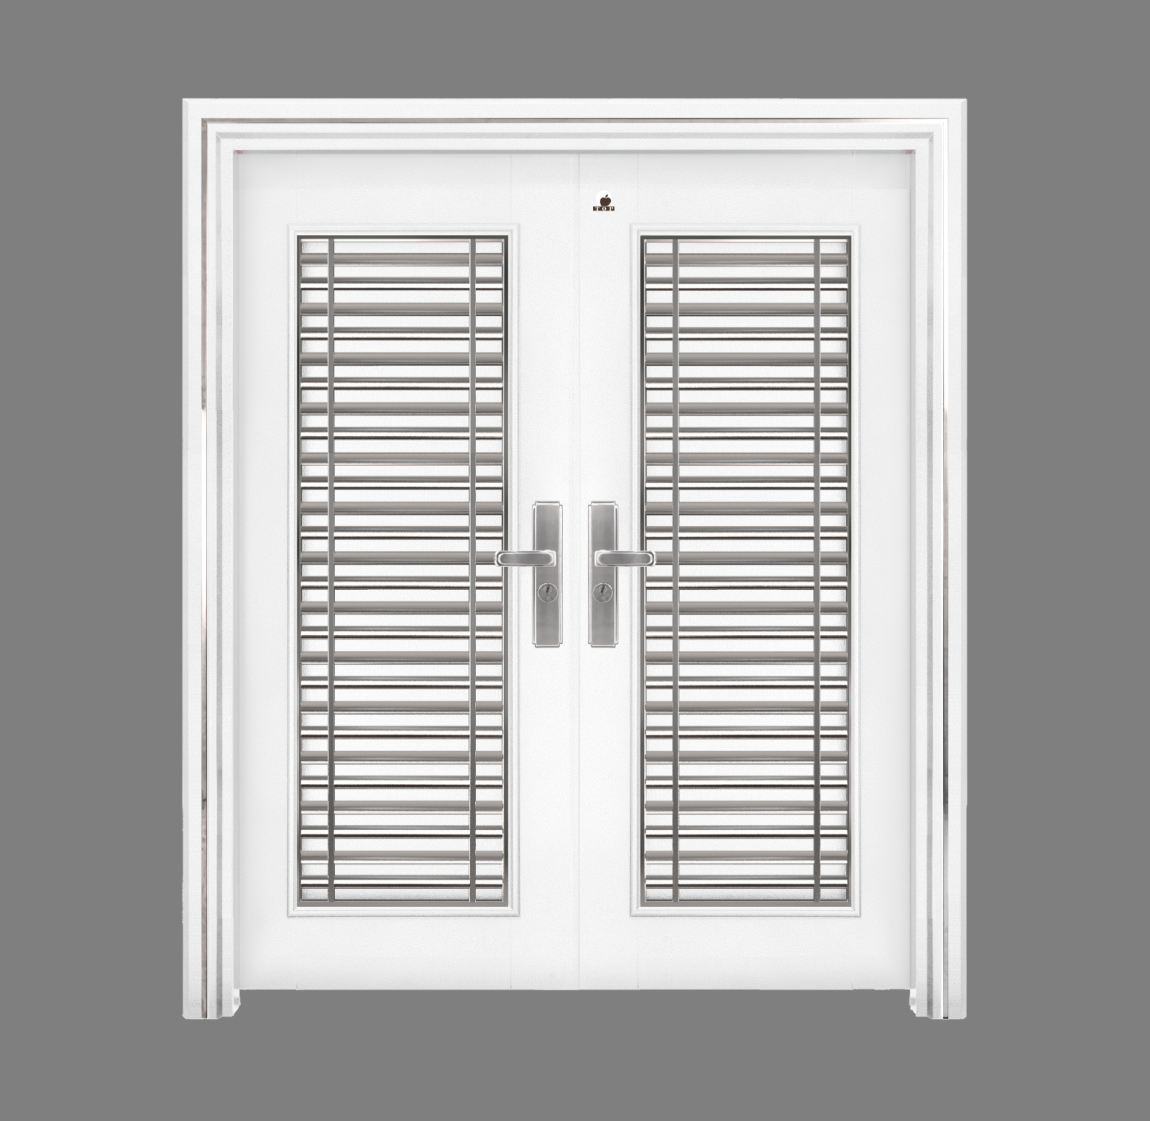 Pintu Keselamatan - D6-304F   Pintu Keselamatan Double 6 Kaki x 7 kaki Warna Putih Pintu Keselamatan Carta Pilihan Warna Corak